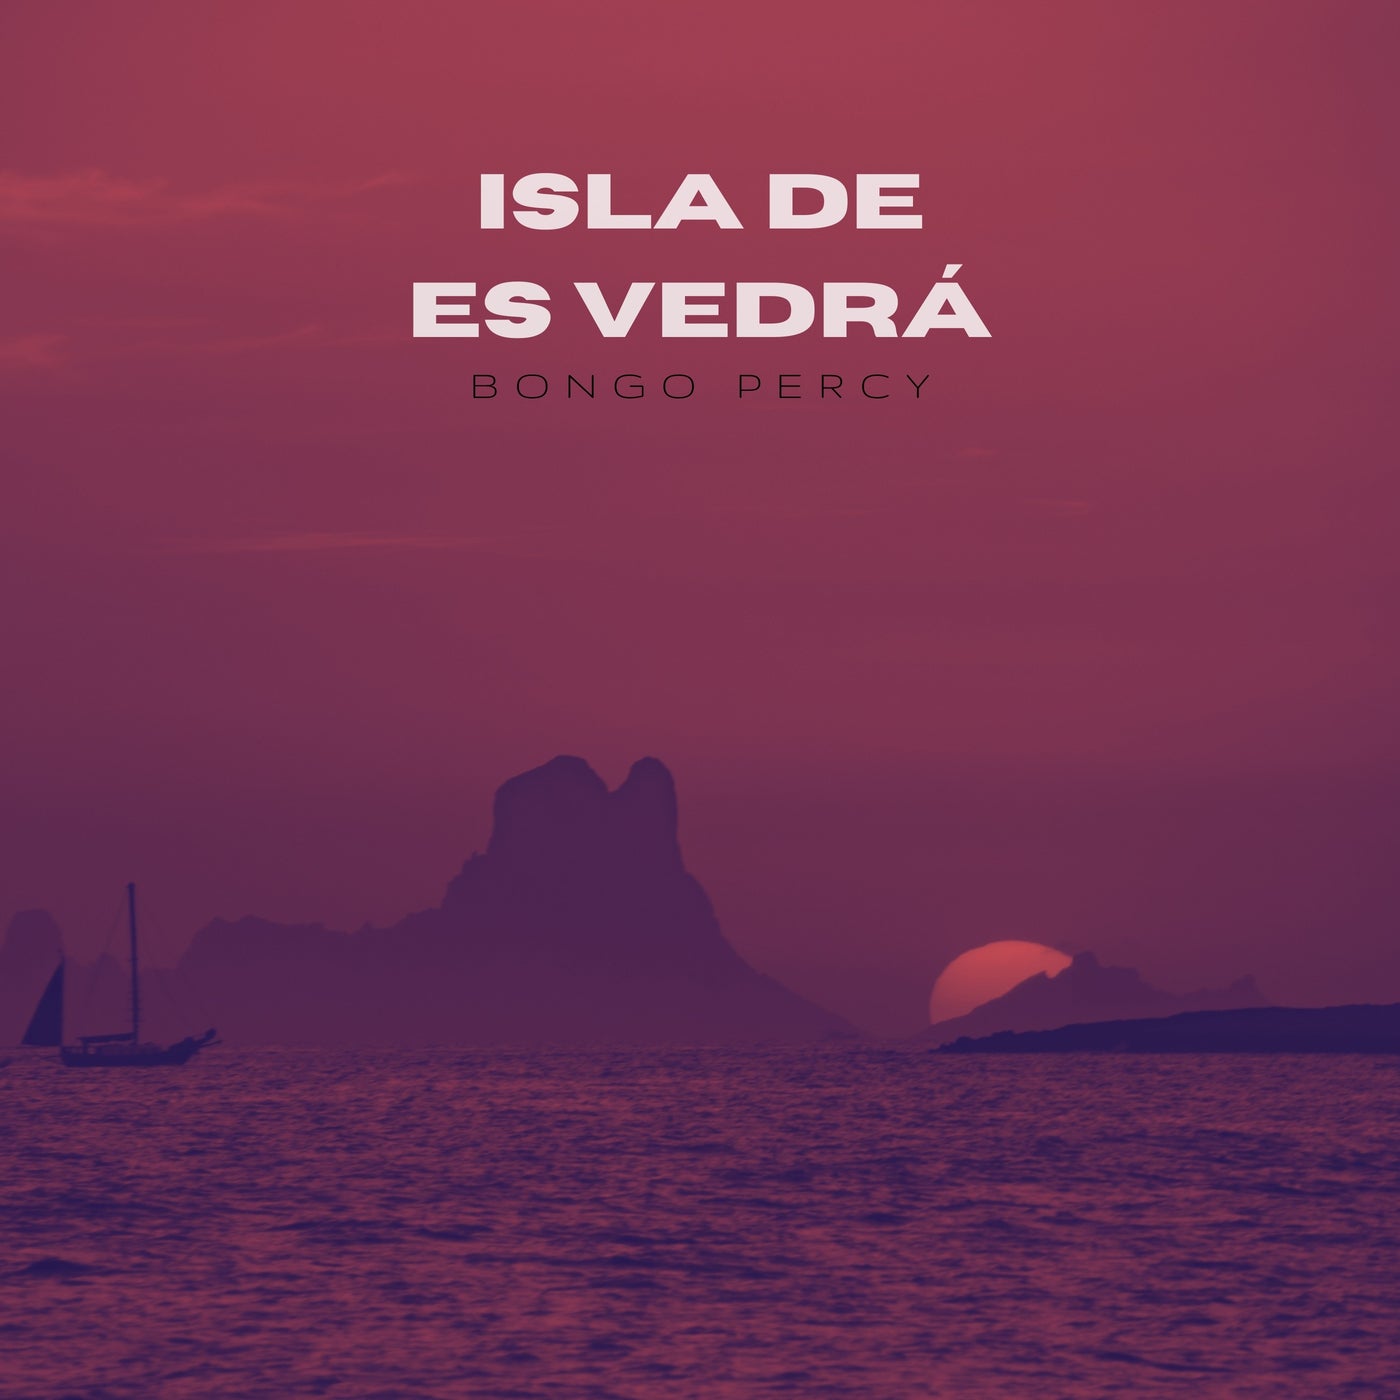 Isla de es Vedrá